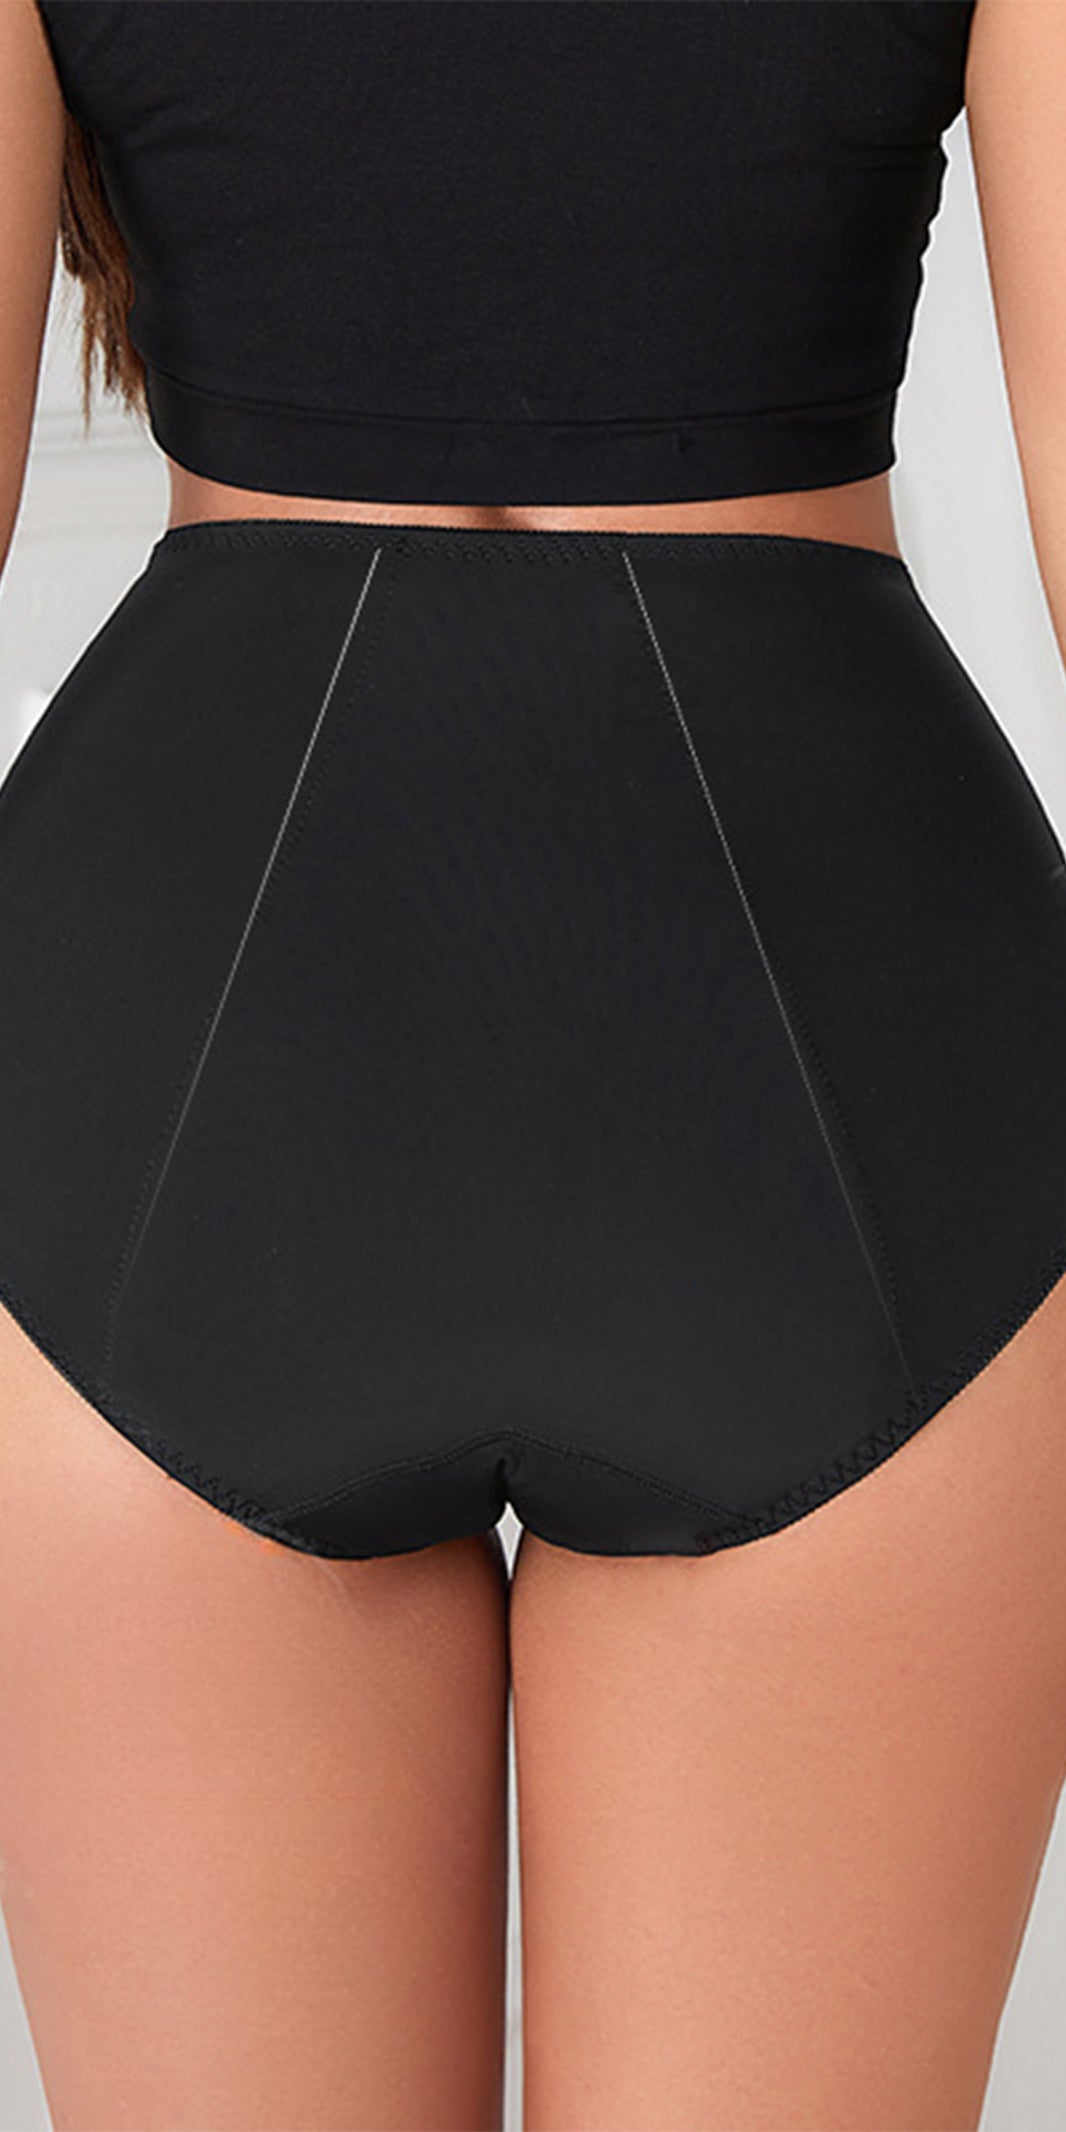 High-Waisted Leak-Proof Panties Menstrual Pants